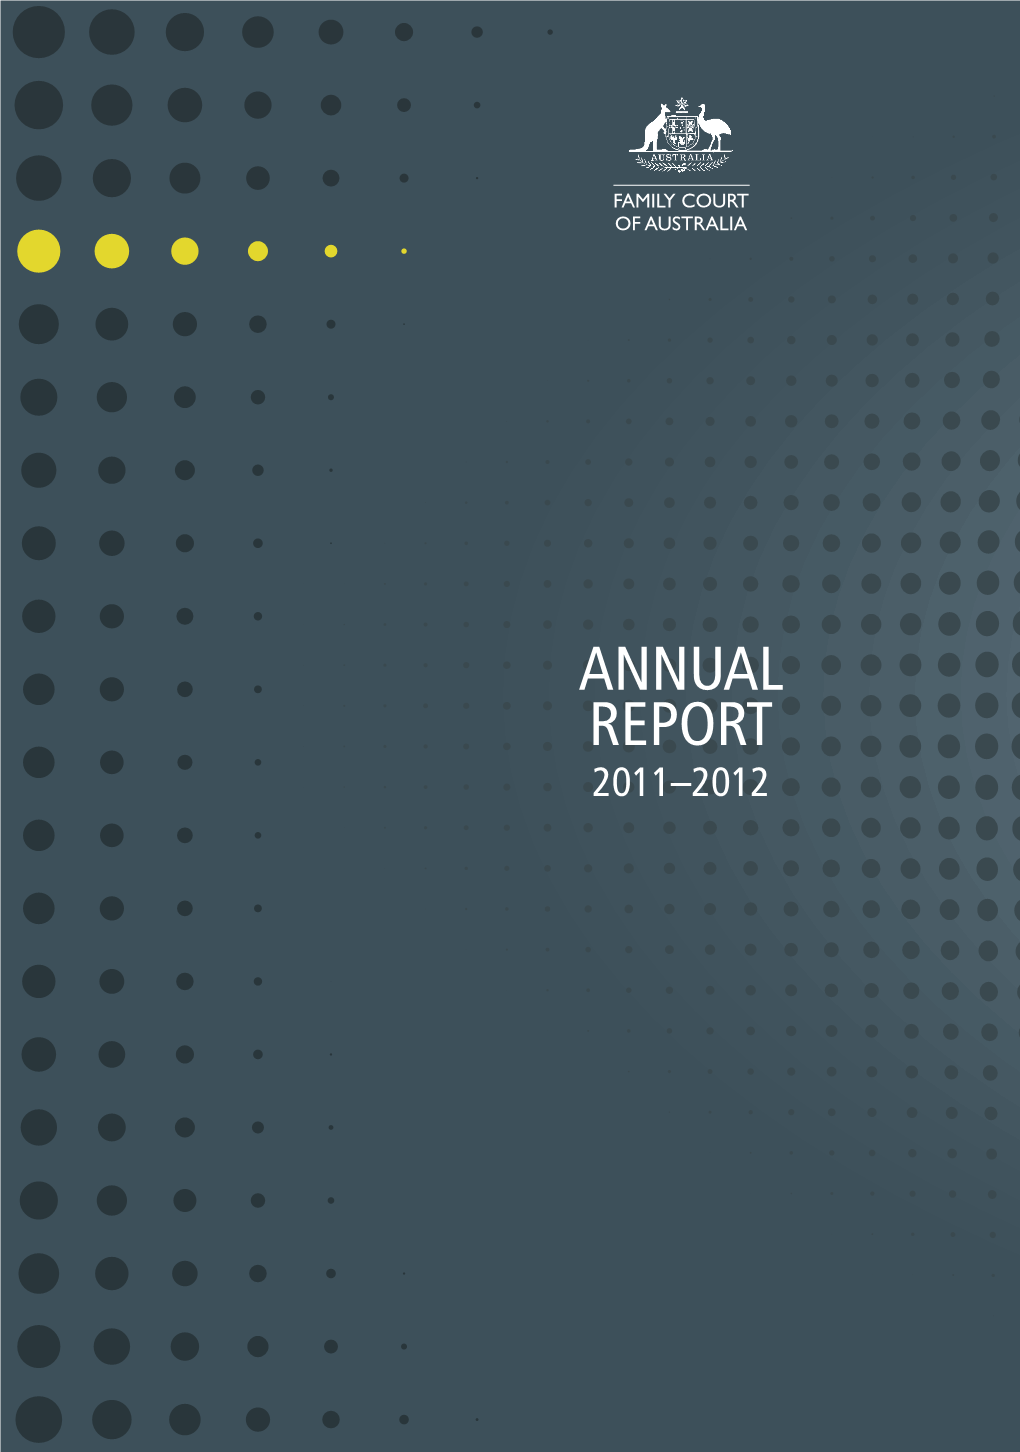 Annual Report 2011–2012 a NNU a L R EPO R T 2011–2012 4675 DESIGN DIRECTION4675